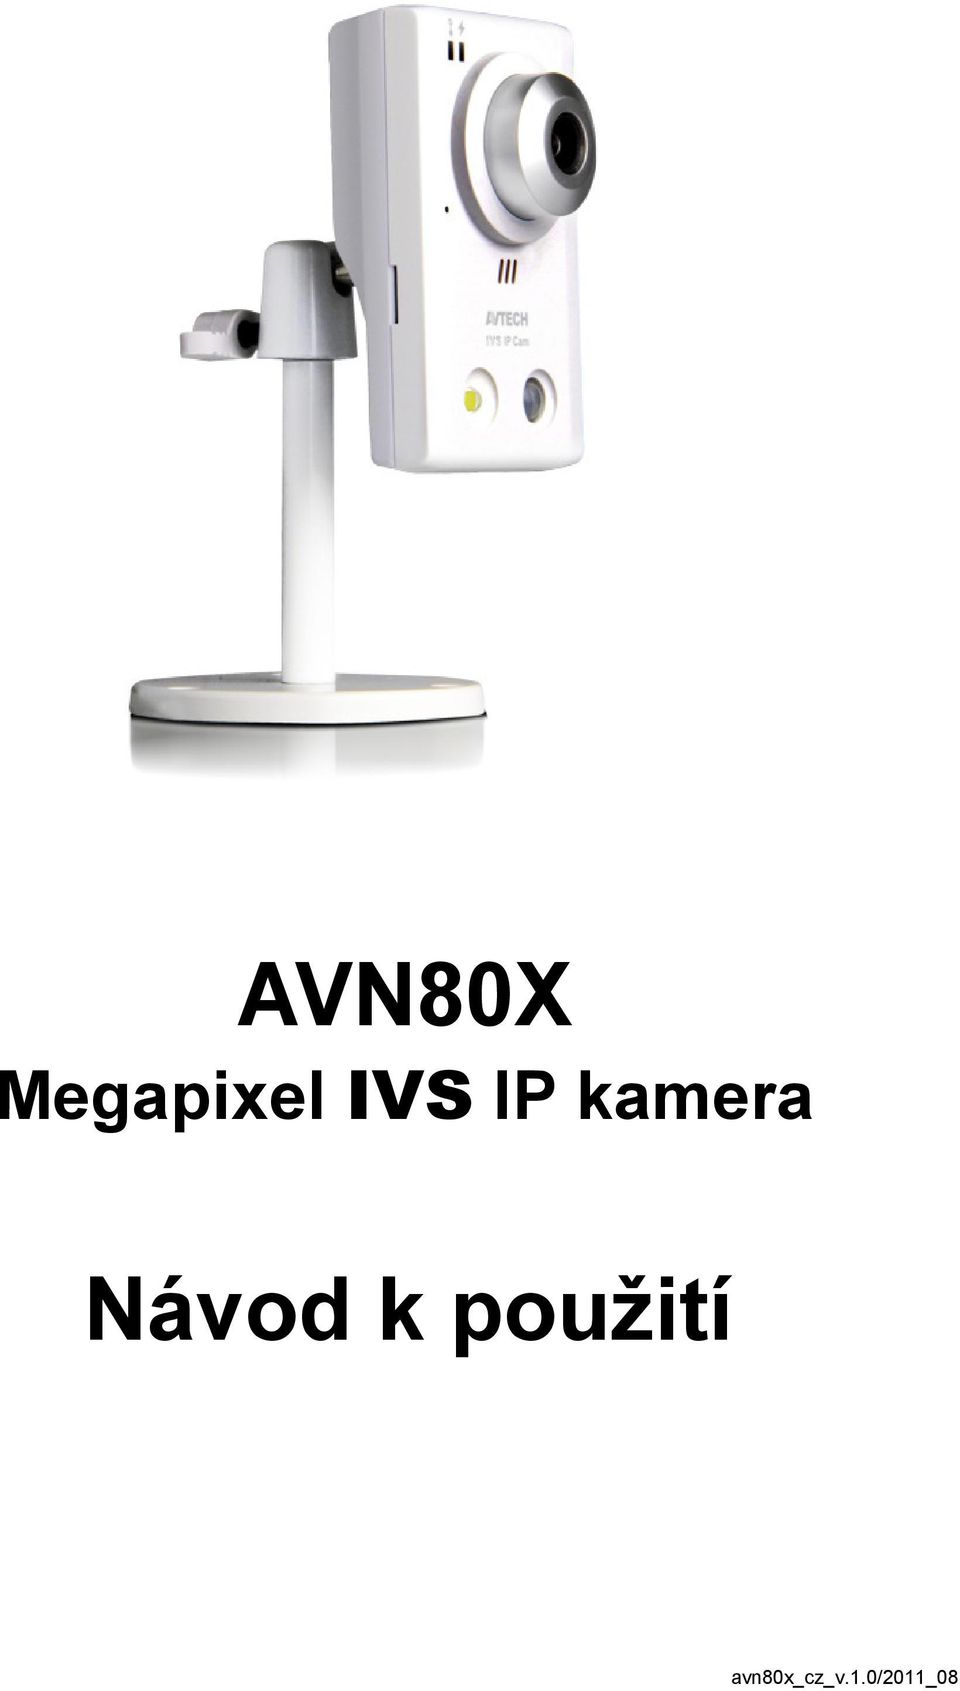 IVS IP